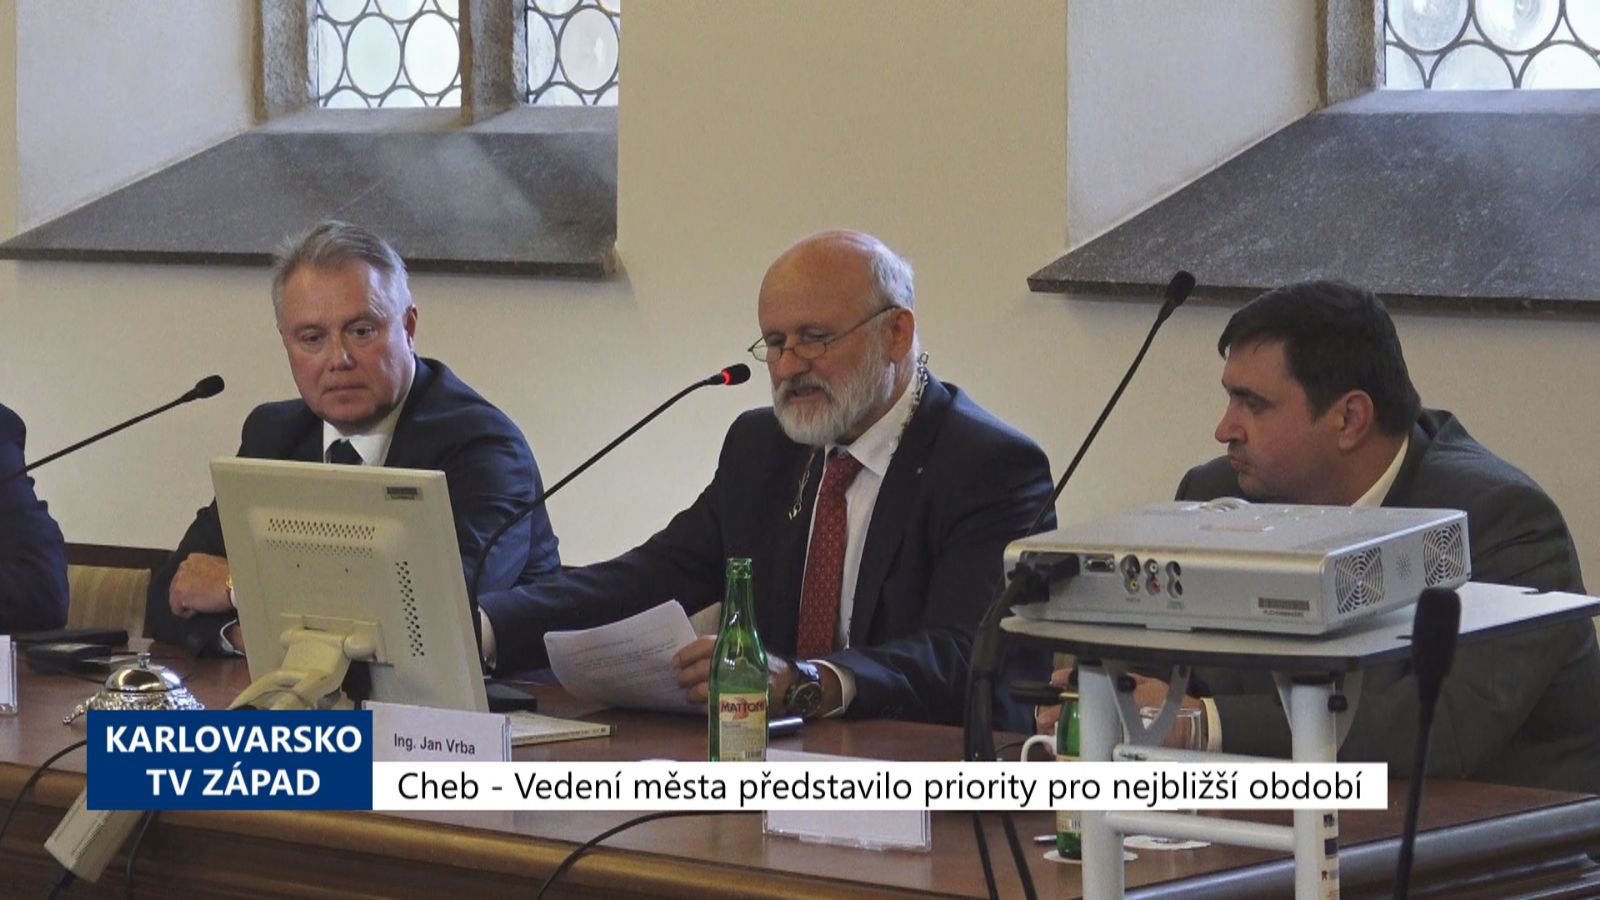 Cheb: Vedení města představilo priority pro nejbližší období (TV Západ)